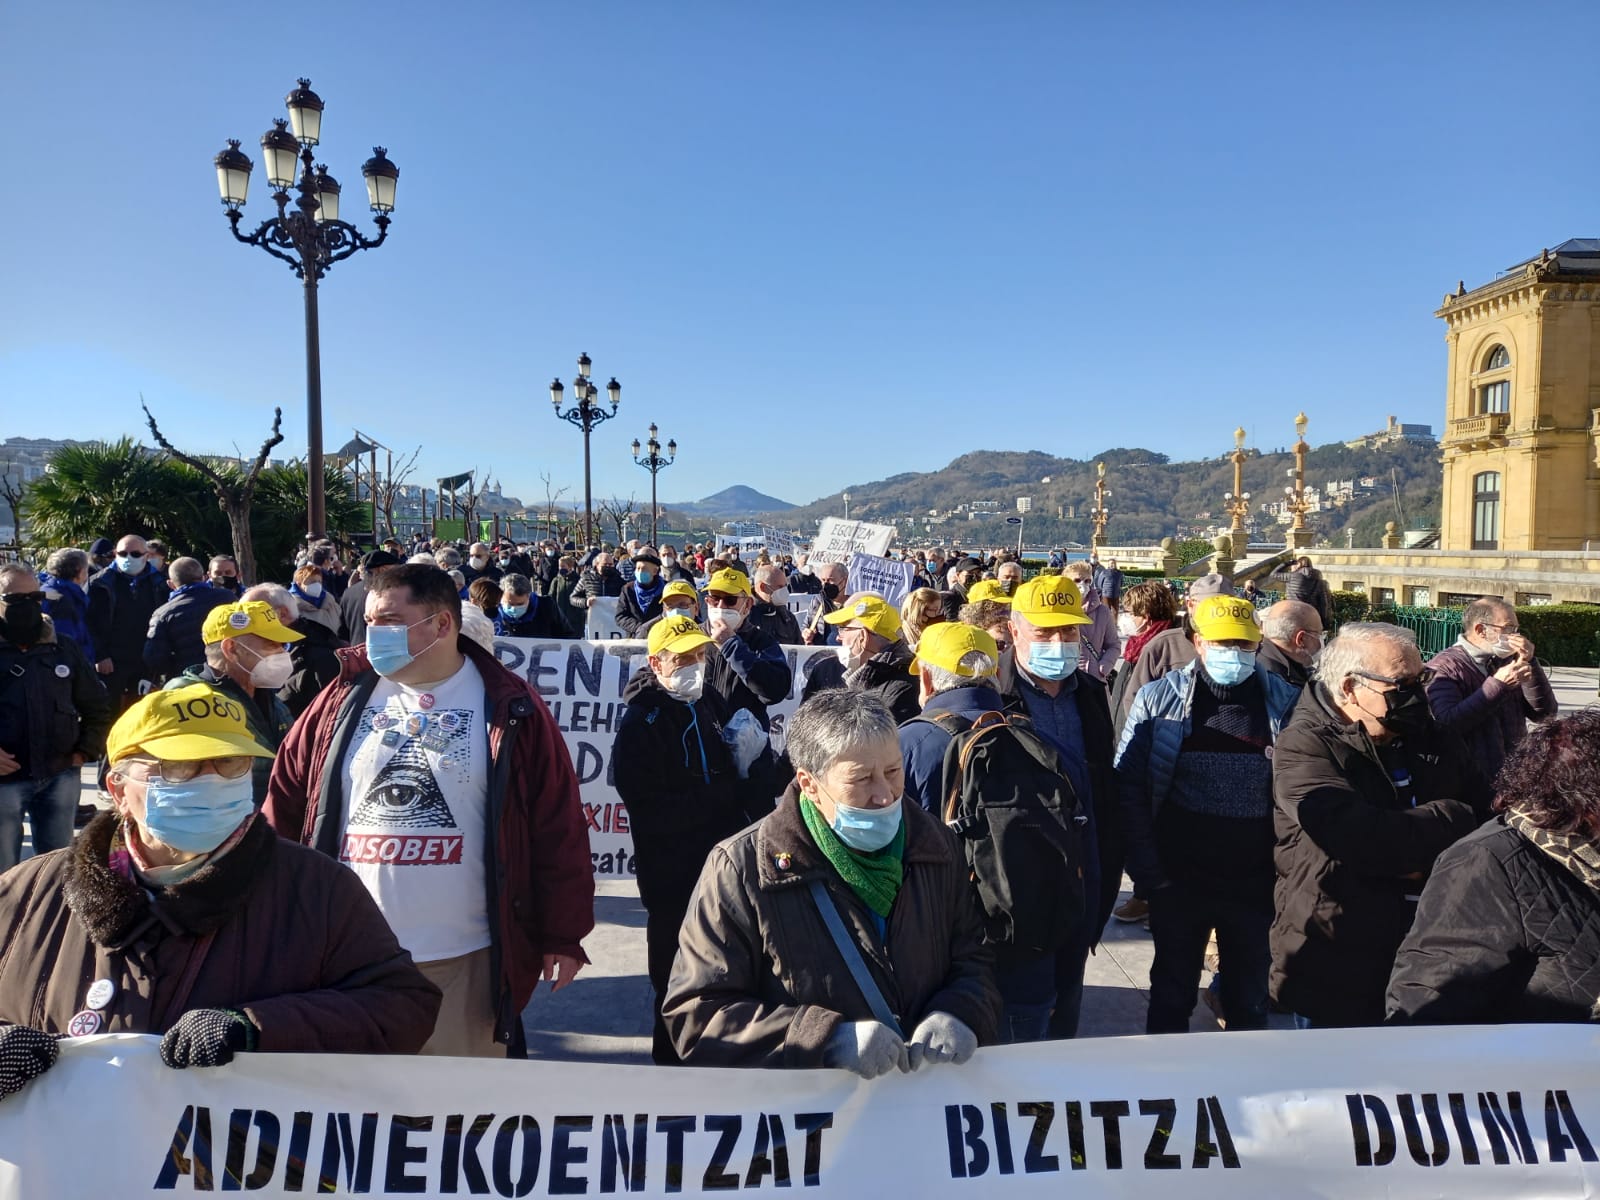 pensionistas3 1 - Los pensionistas gipuzkoanos celebran en la calle sus cuatro años más reivindicativos